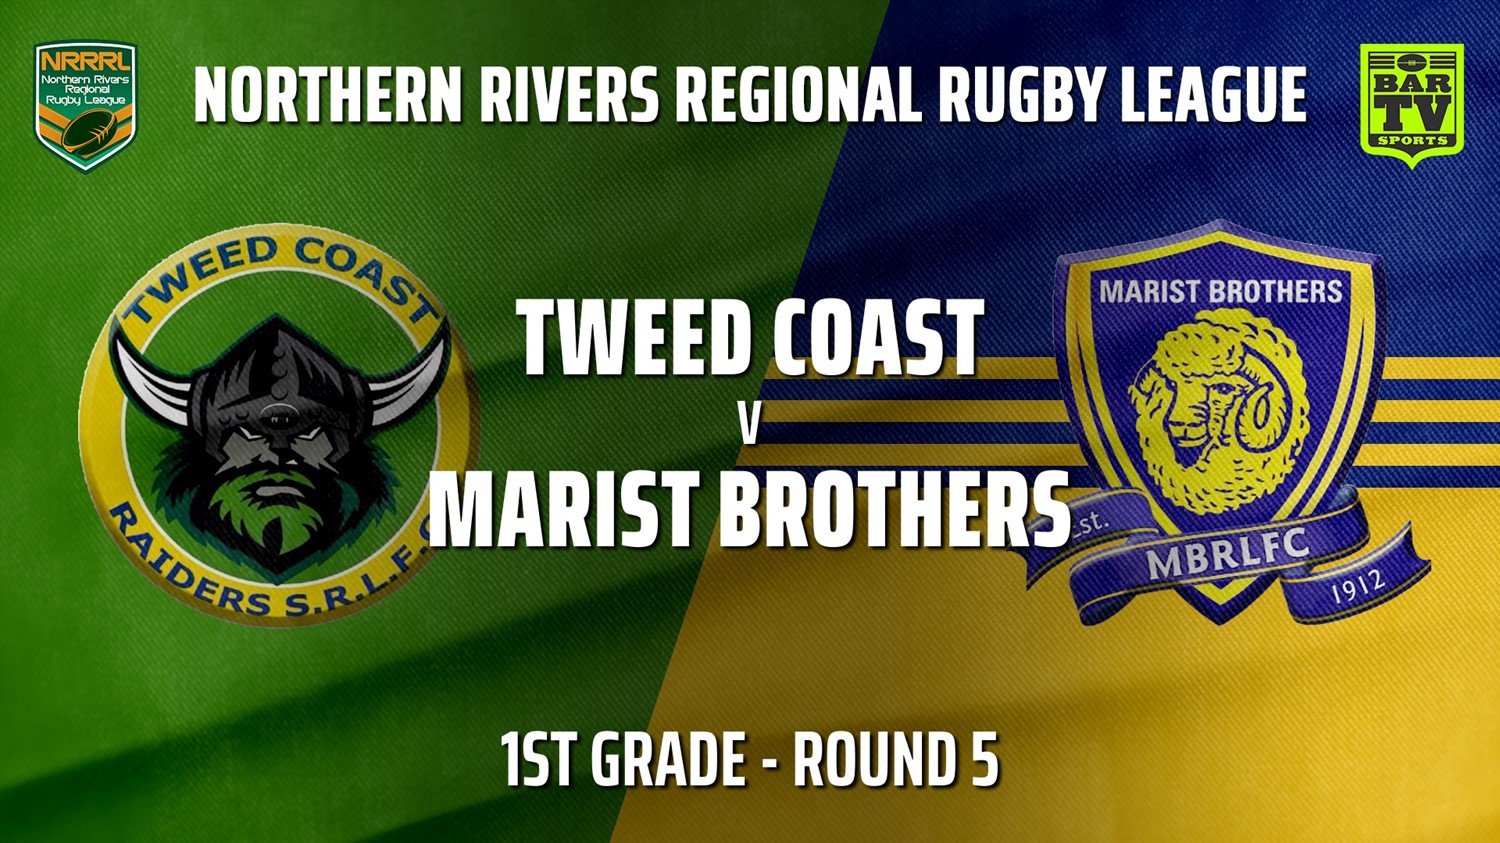 210530-NRRRL Round 5 - 1st Grade - Tweed Coast Raiders v Lismore Marist Brothers Rams Slate Image